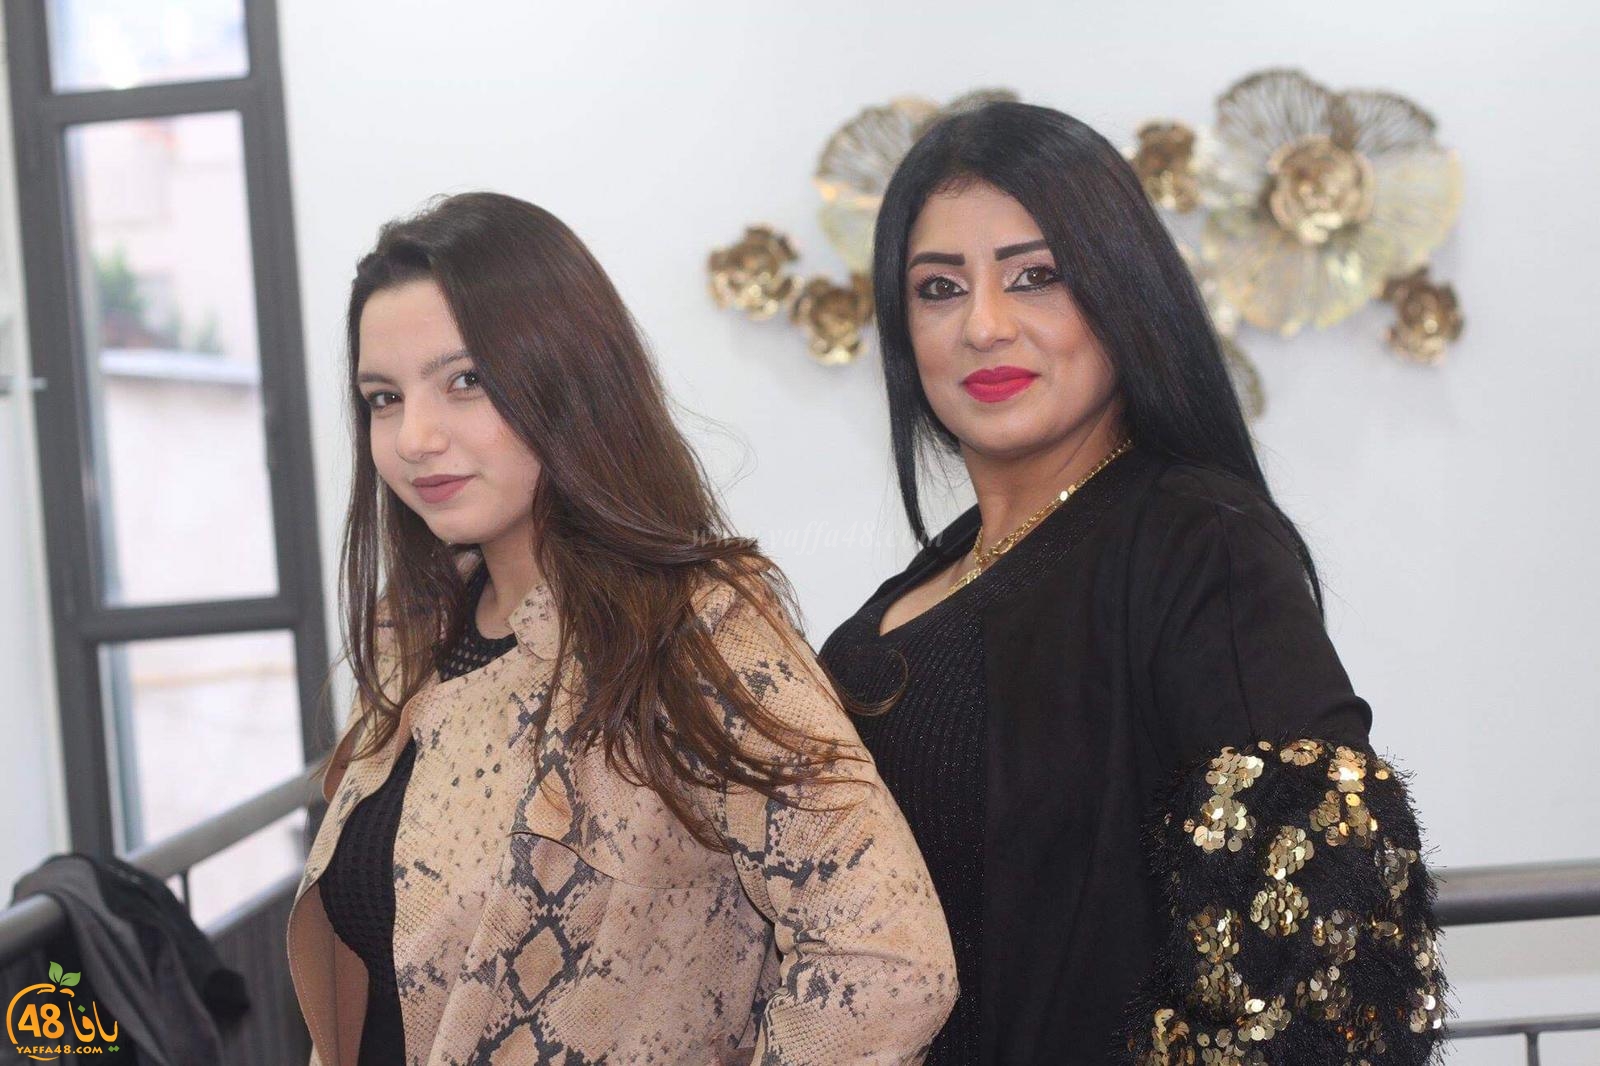 بالصور: افتتاح محل Nani jaffa للملابس النسائية في يافا 